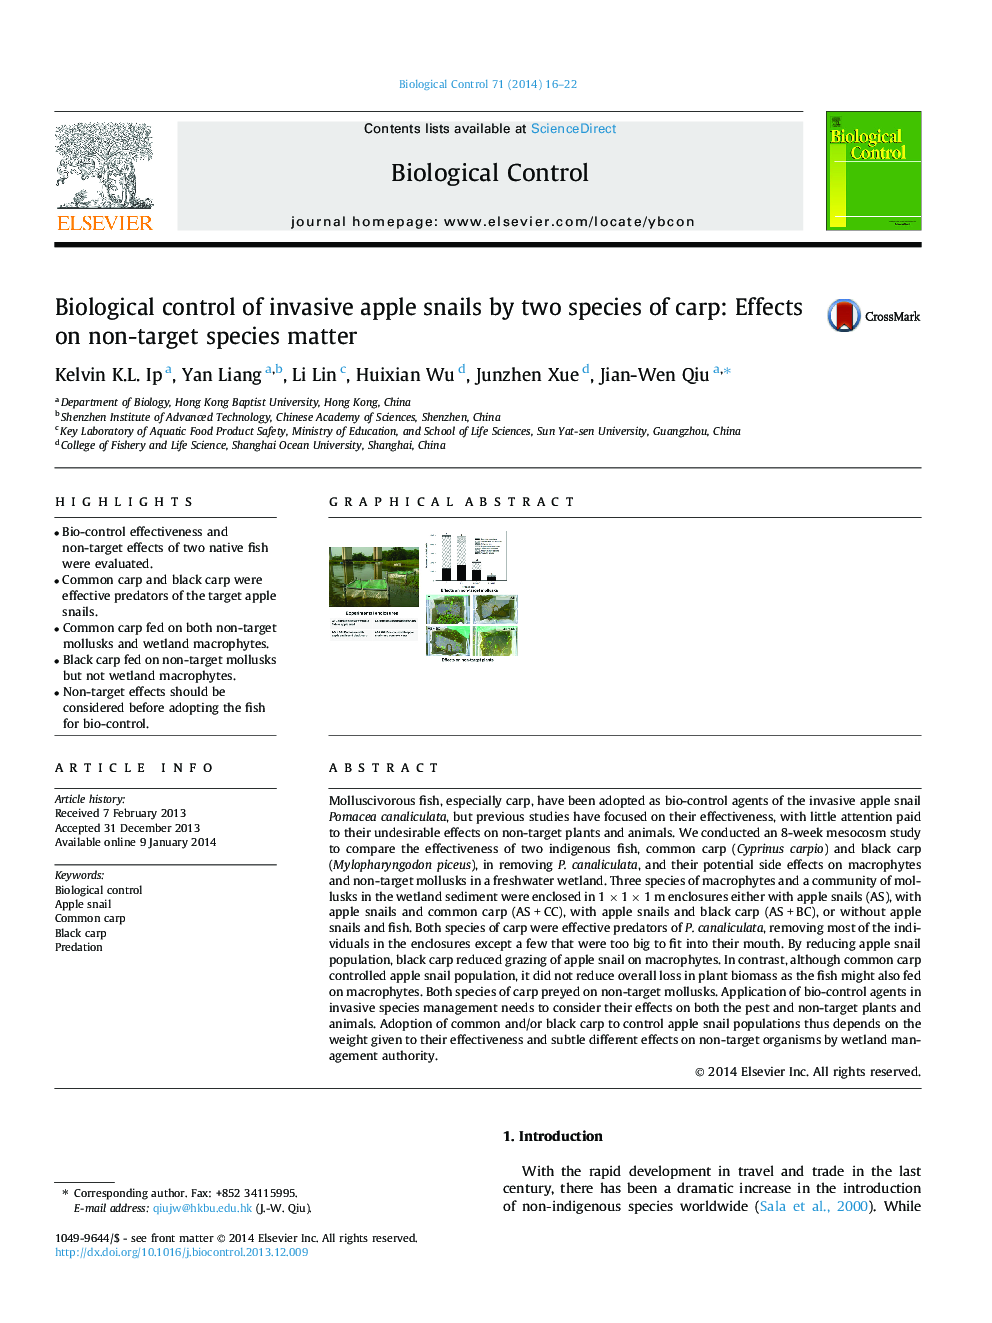 کنترل بیولوژیکی از حلزون های سیب مهاجم توسط دو گونه کپور: تاثیرات بر روی گونه های غیر هدف دار ماده 